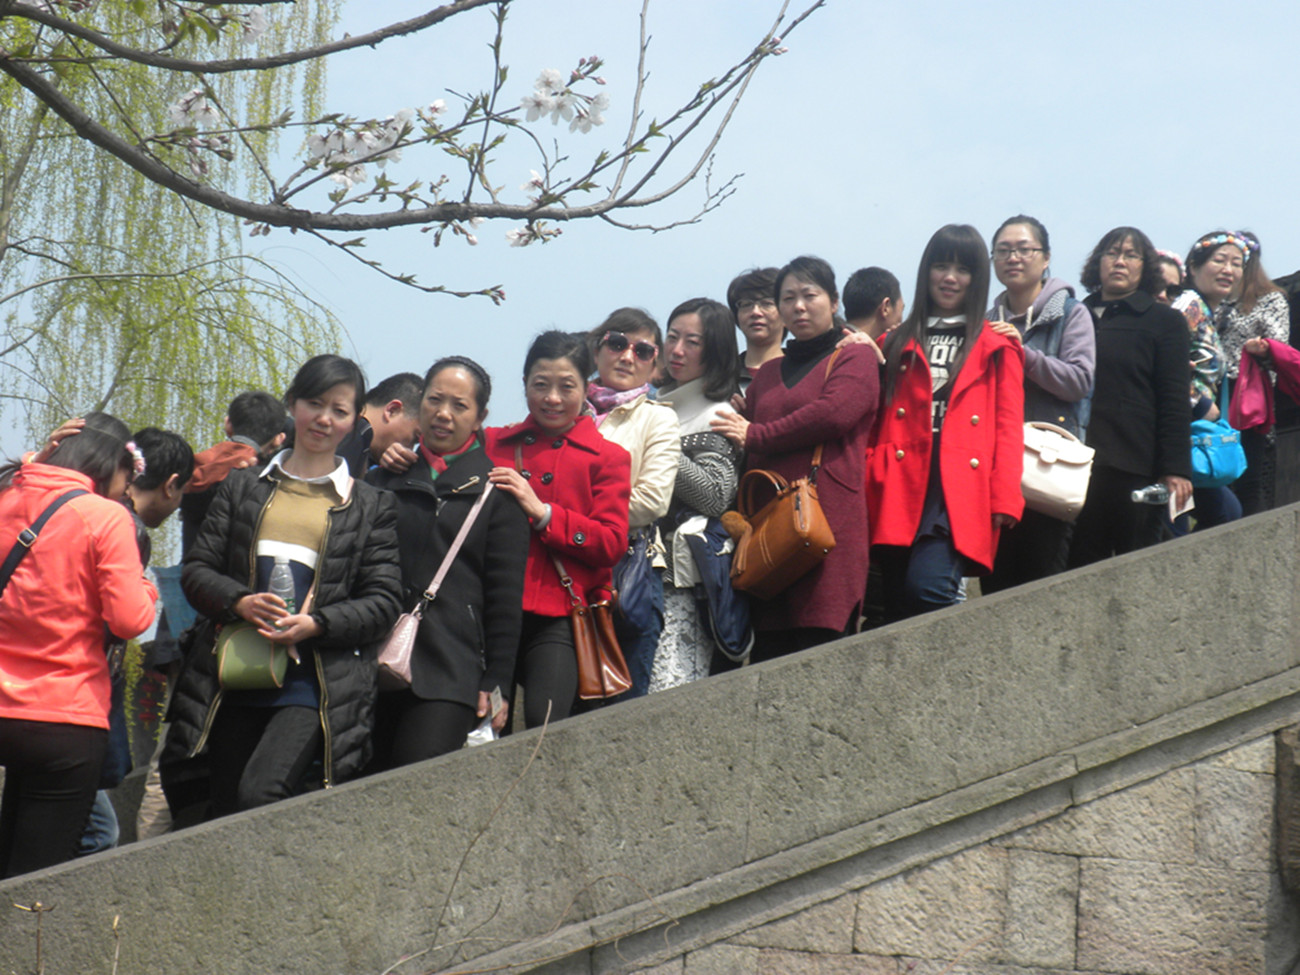 十建集团工会组织女职工赴杭州旅游